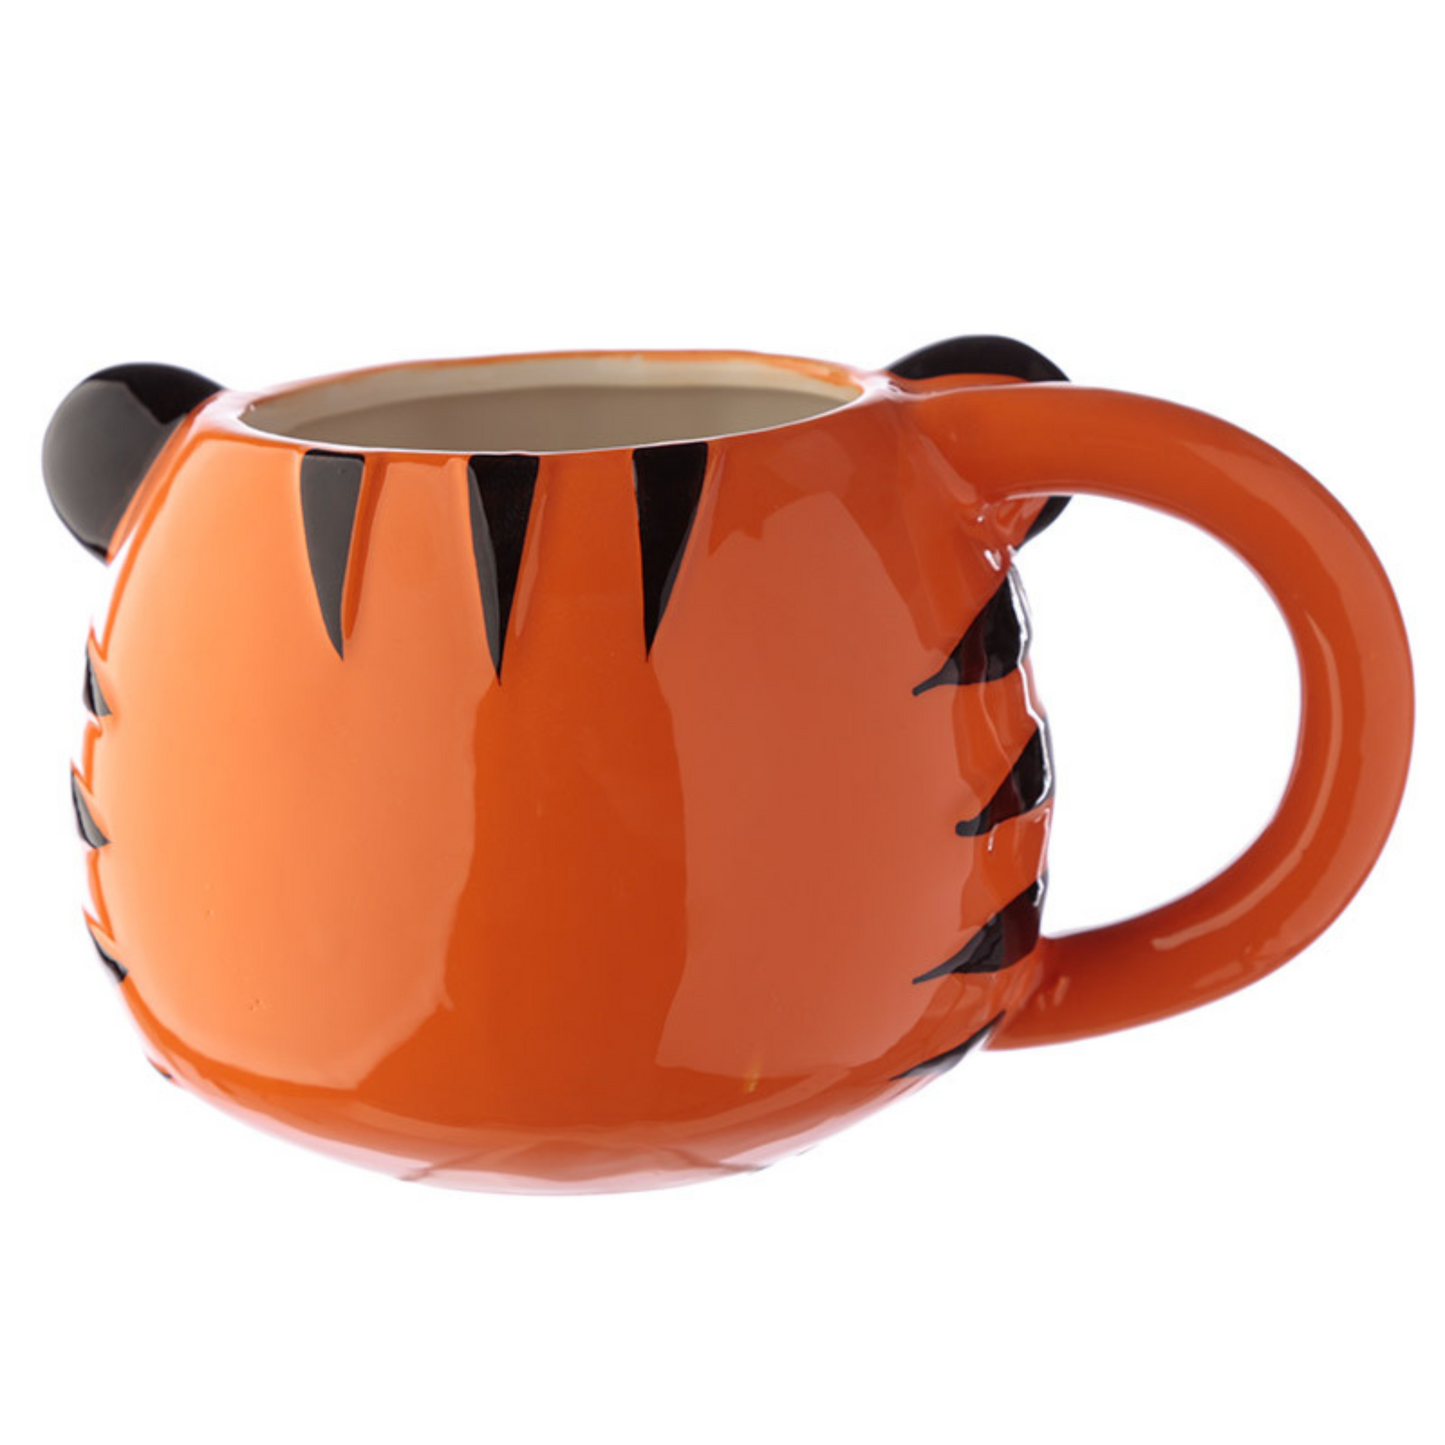 Novelty Tiger Face Ceramic Mug